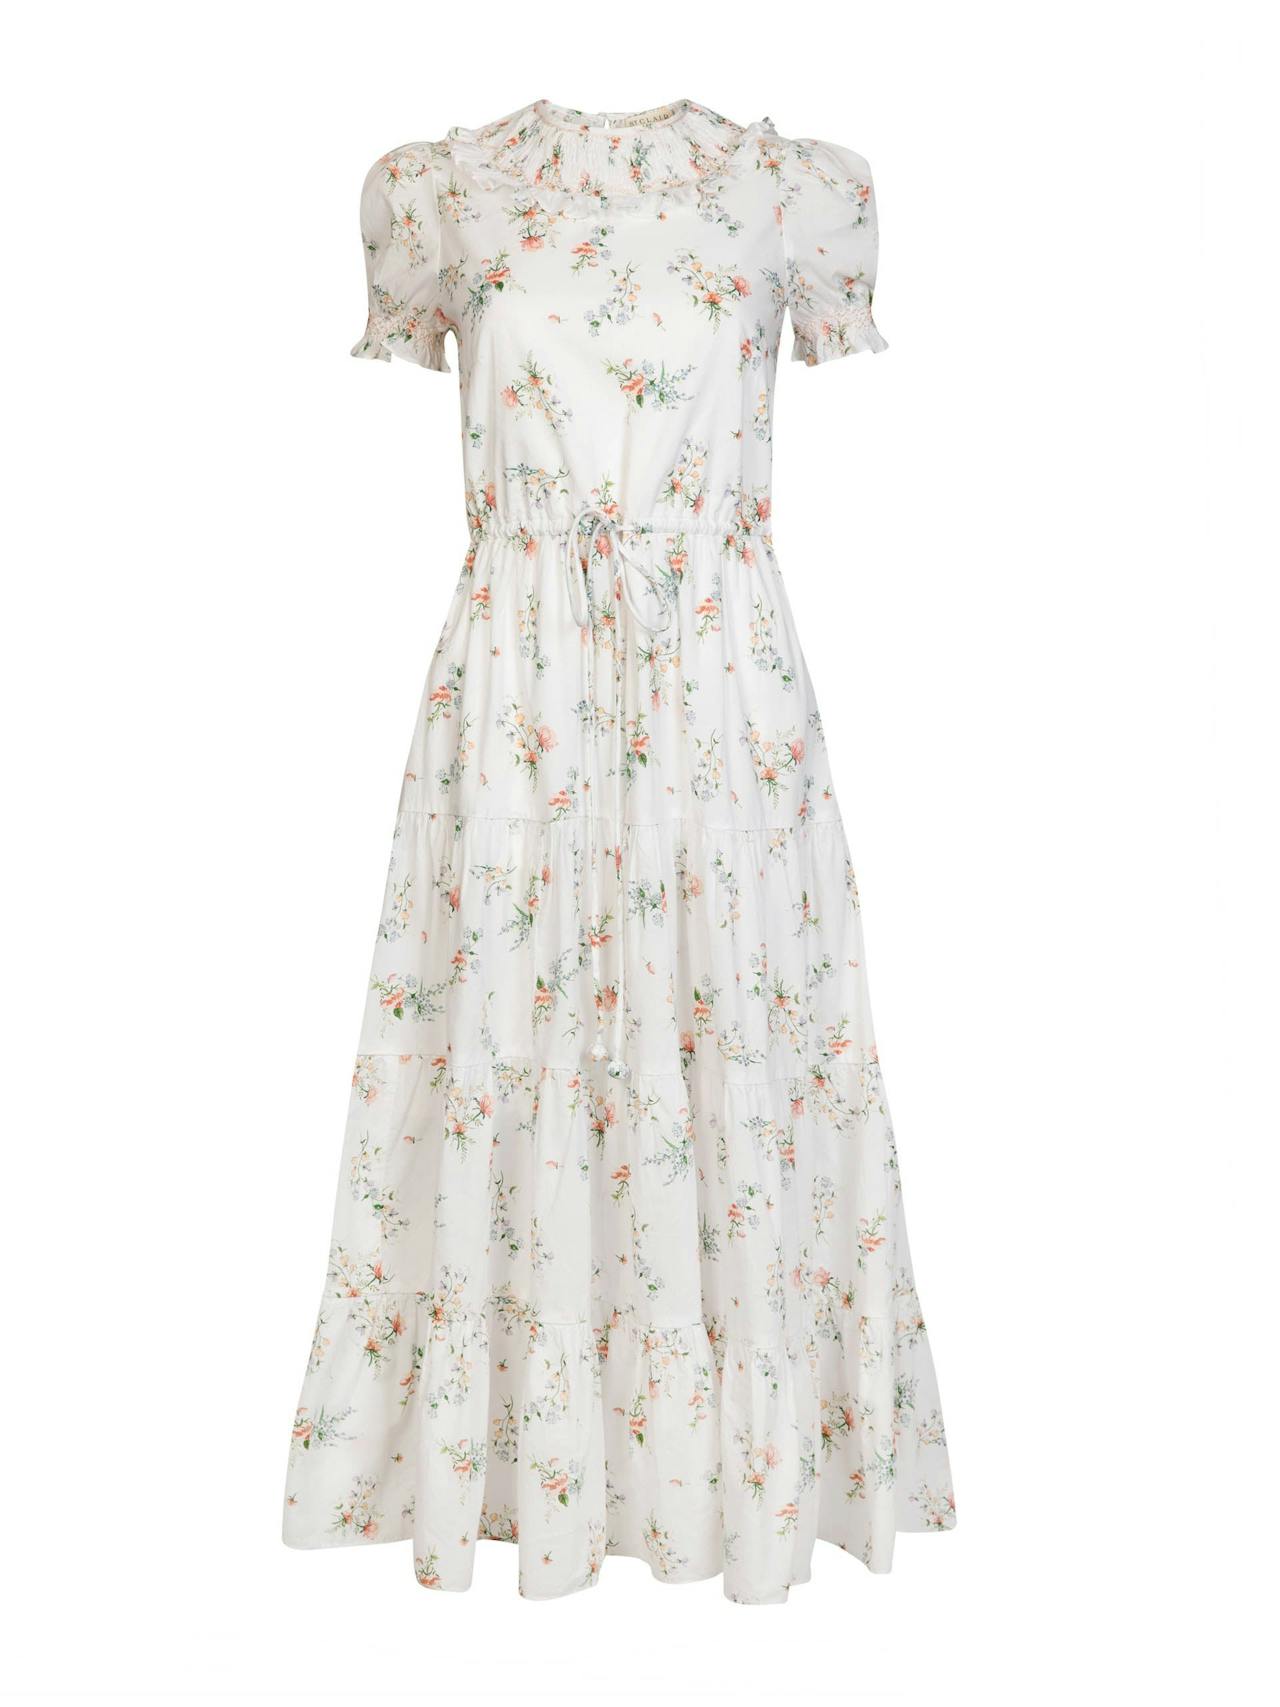 Meadow Alice dress